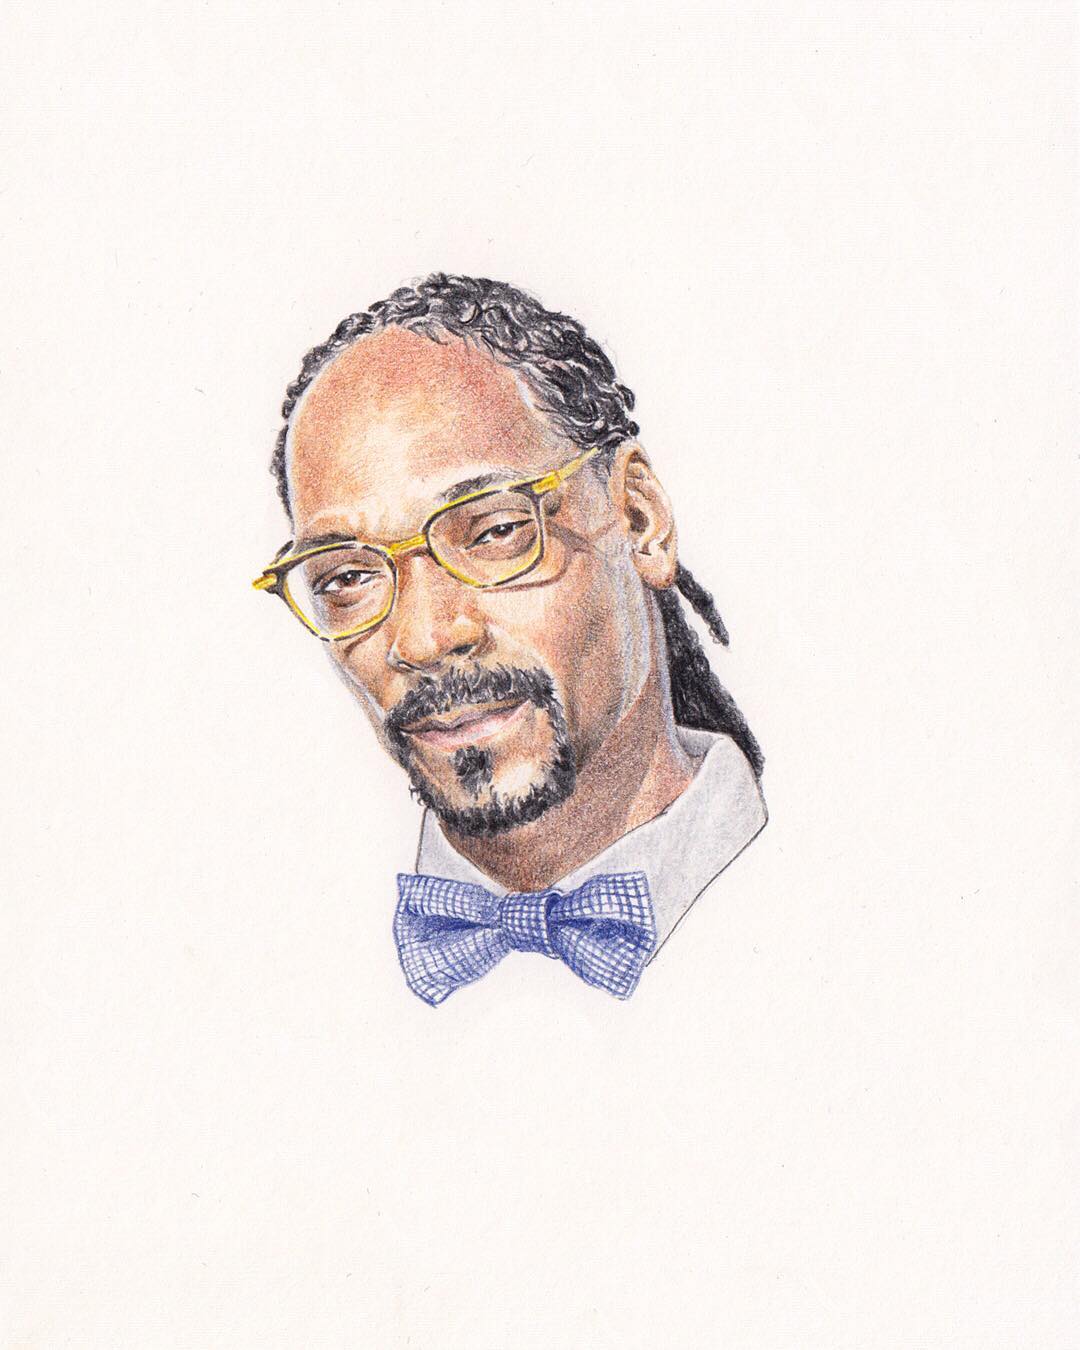 Un portrait du rappeur Snoop Dog réalisé par Alexandre Luu